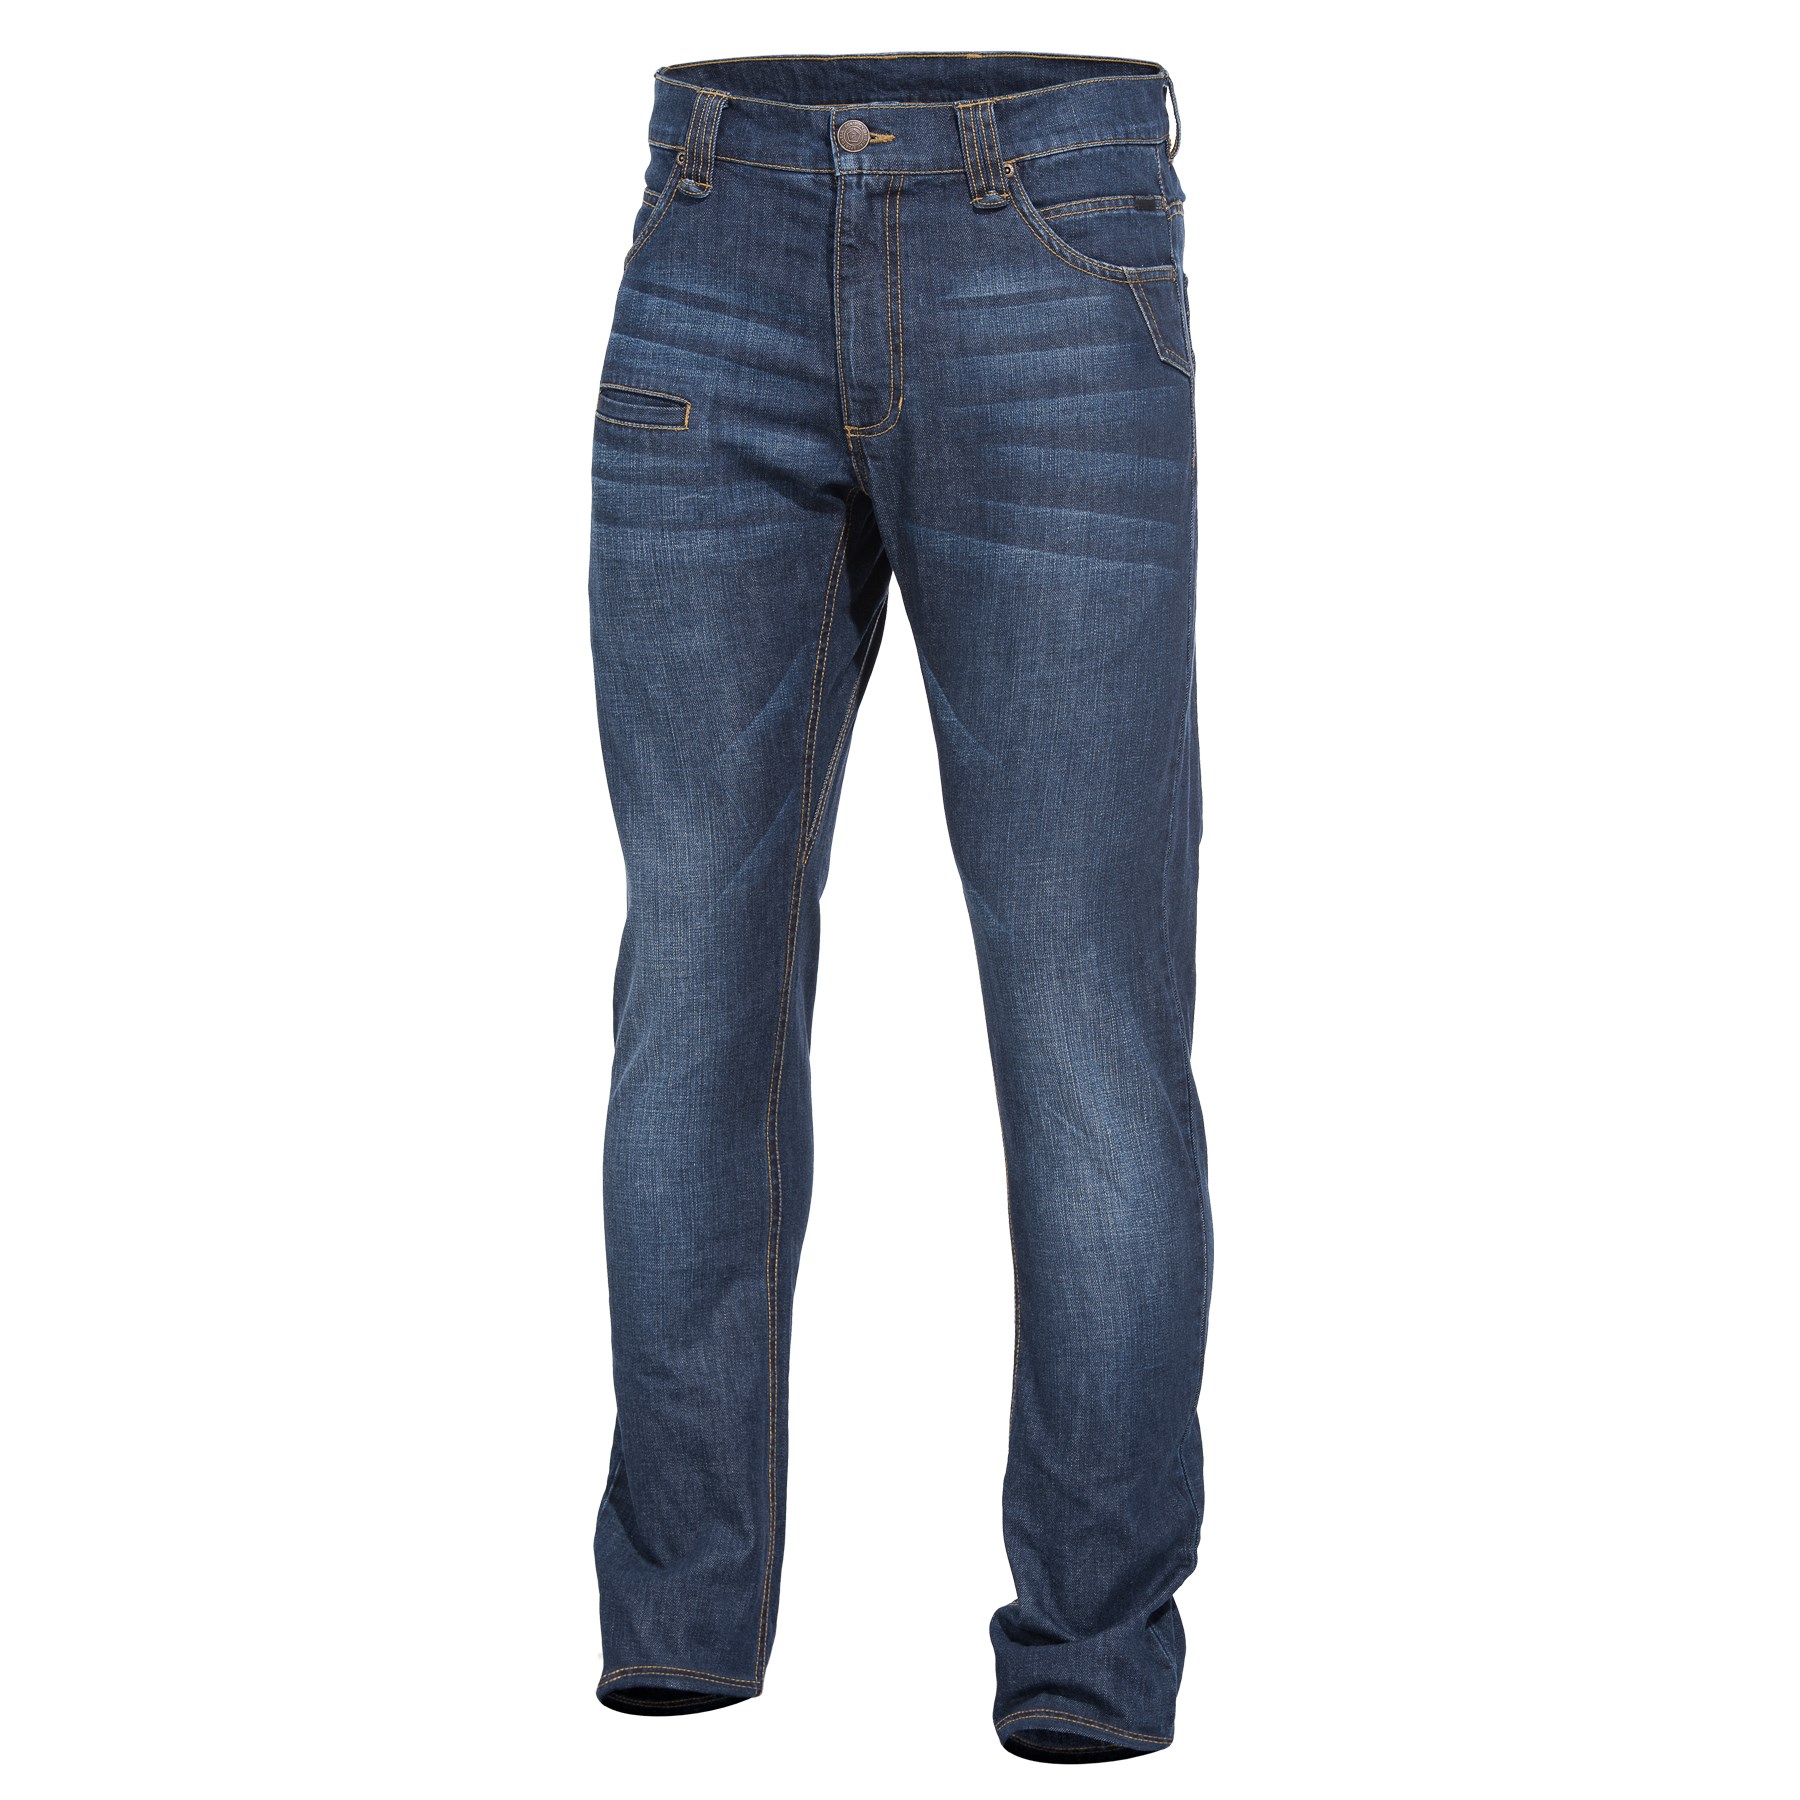 Nohavice taktické džínsové ROGUE Jeans MODRÉ